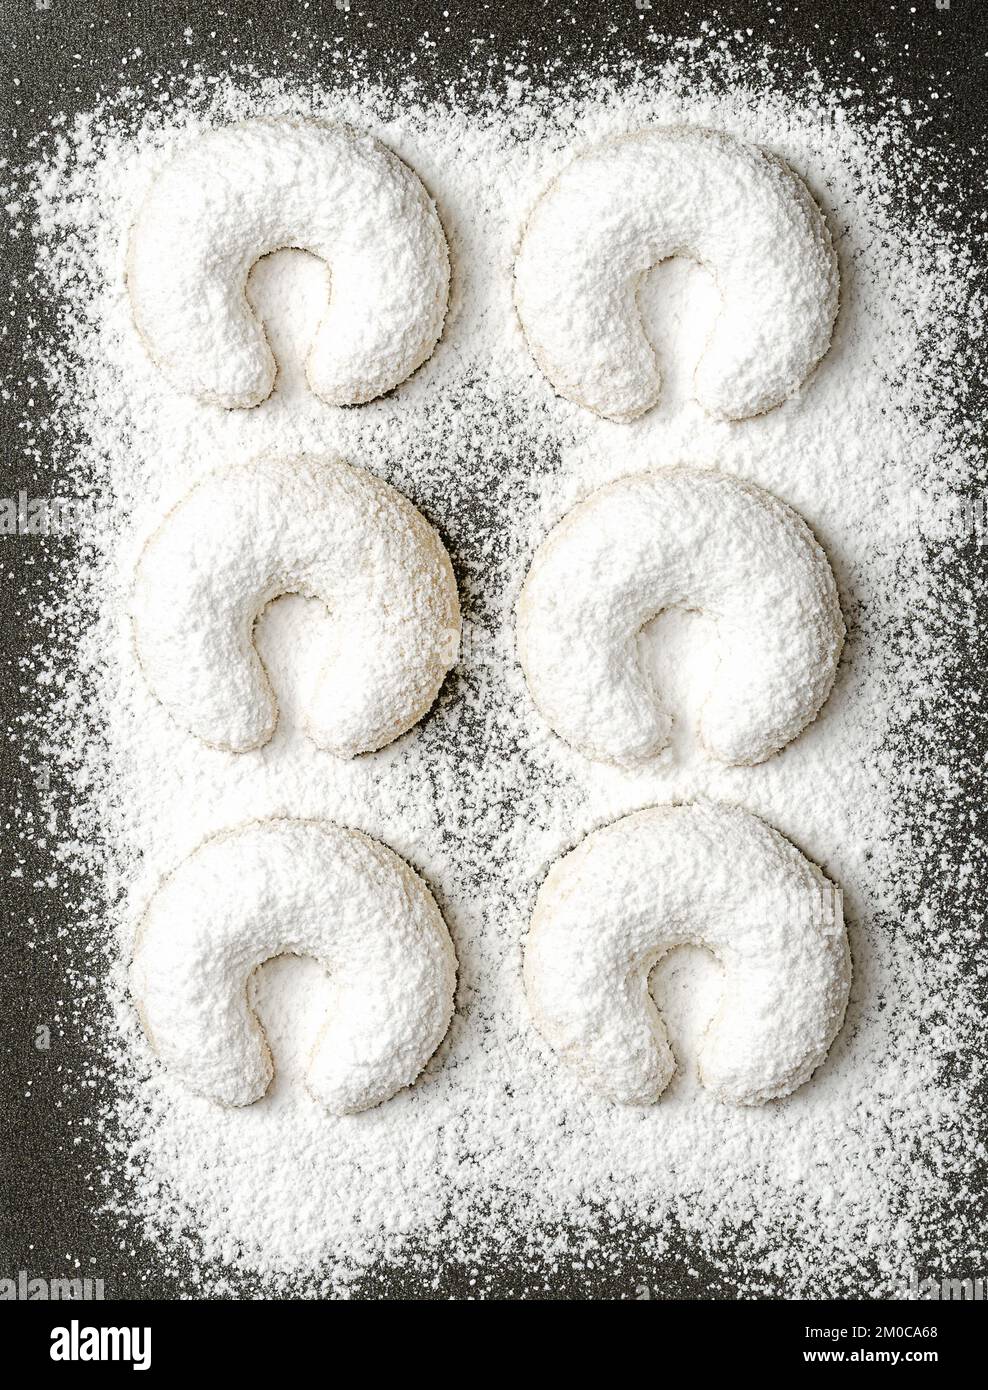 Con lo zucchero alla vaniglia, i cressenti di vaniglia spolverati, Vanillekipferl su una teglia da forno Biscotti di Natale a forma di mezzaluna, originari dell'Austria. Foto Stock